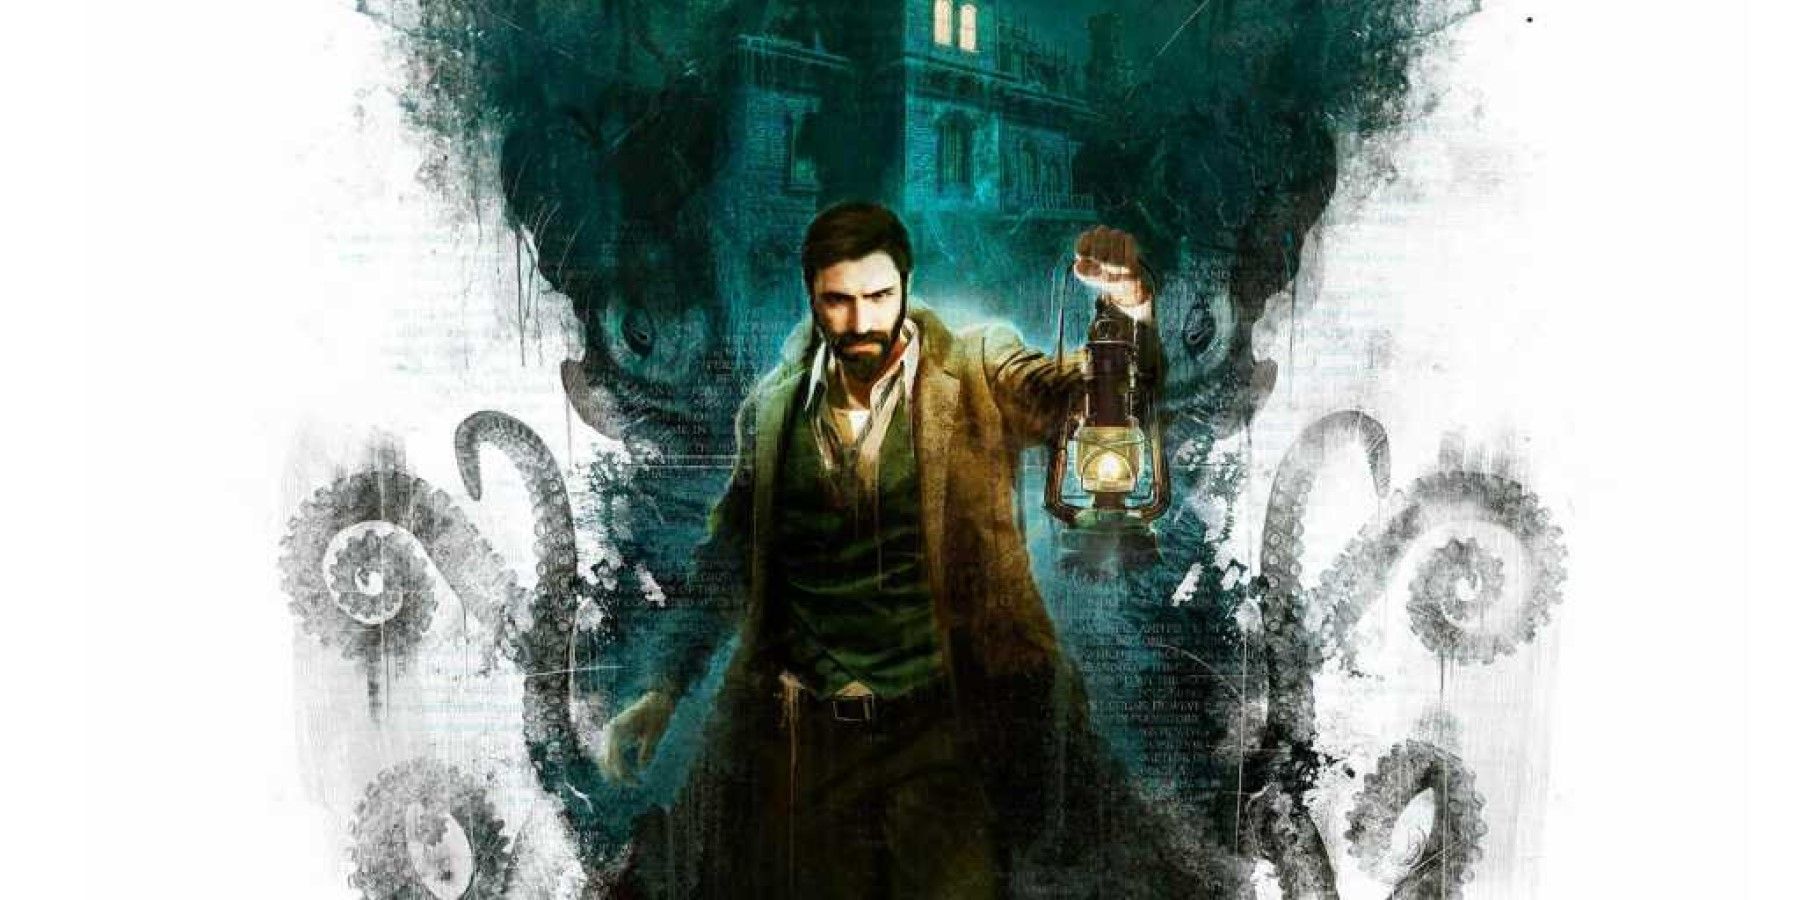 H.P. Влиянието на Lovecraft в игрите обясни